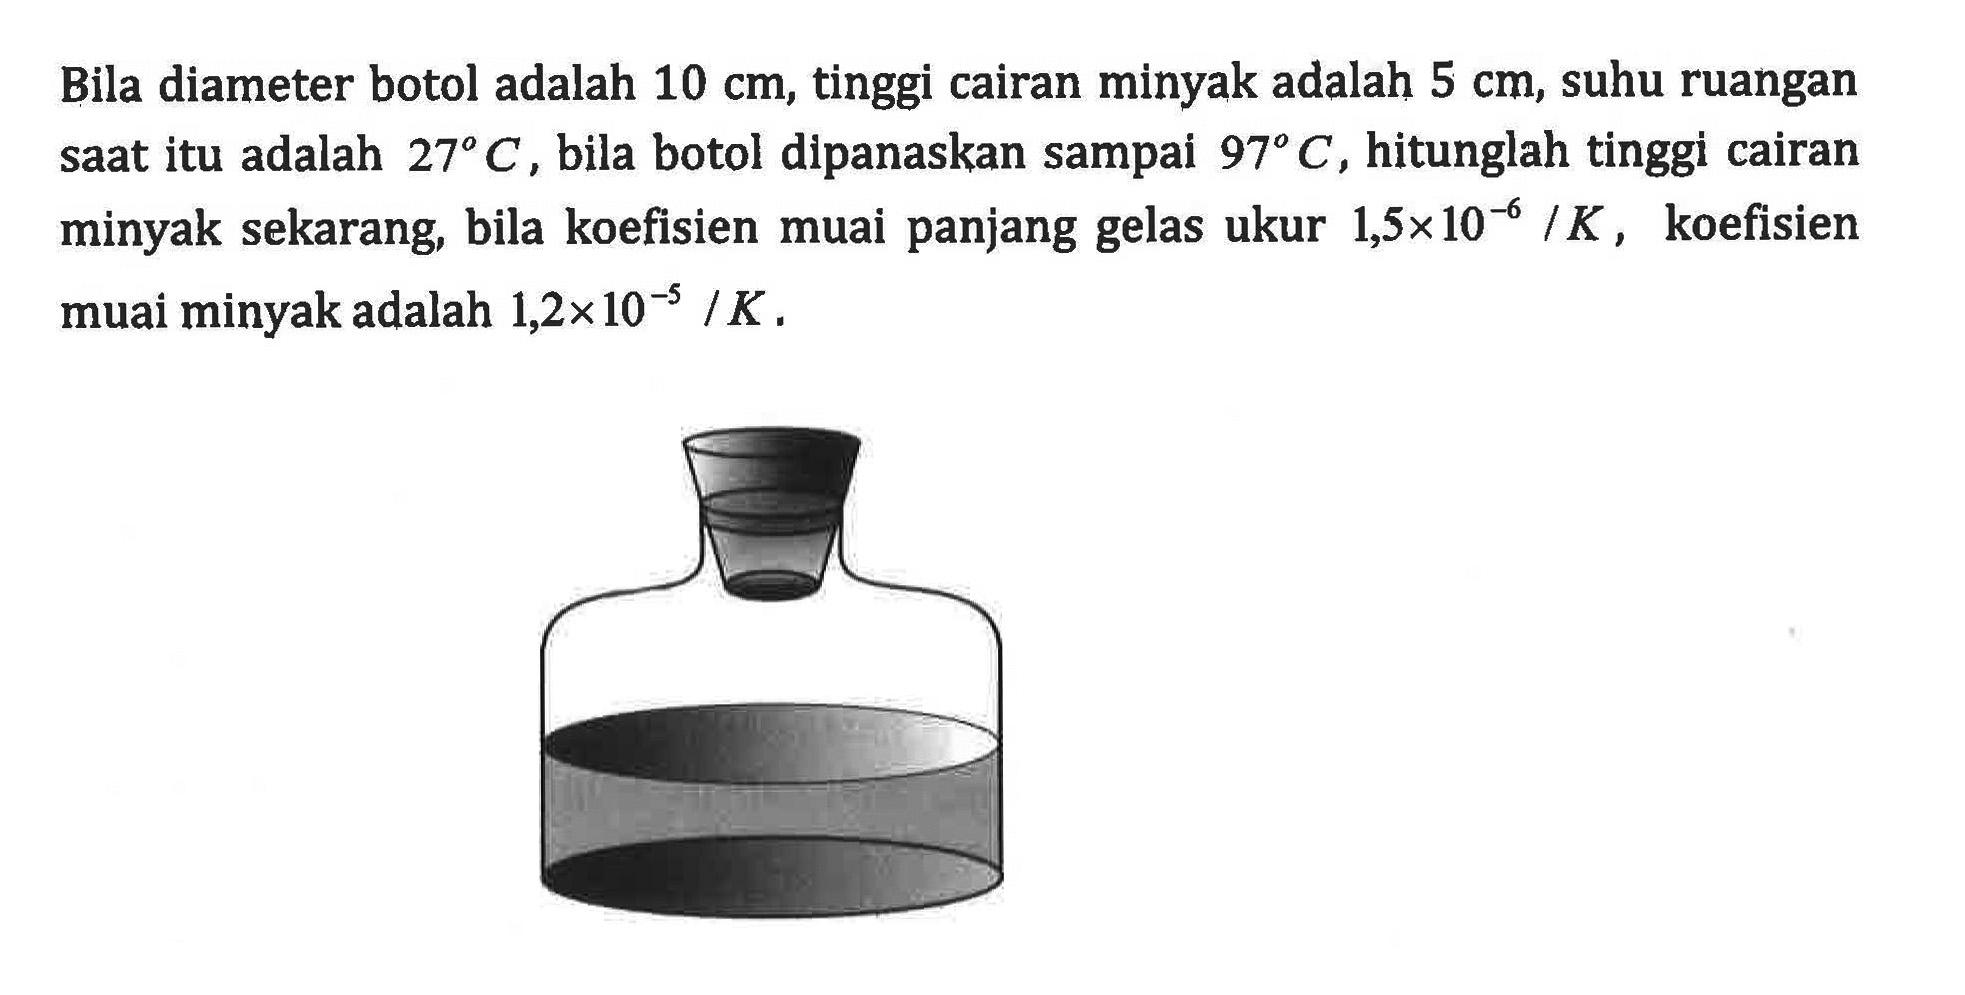 Bila diameter botol adalah 10 cm, tinggi cairan minyak adalah 5 cm, suhu ruangan saat itu adalah 27C, bila botol dipanaskan sampai 97C, hitunglah tinggi cairan minyak sekarang, bila koefisien muai panjang gelas ukur 1,5 x 10^(-6) /K, koefisien muai minyak adalah 1,2 x 10^(-5) /K.